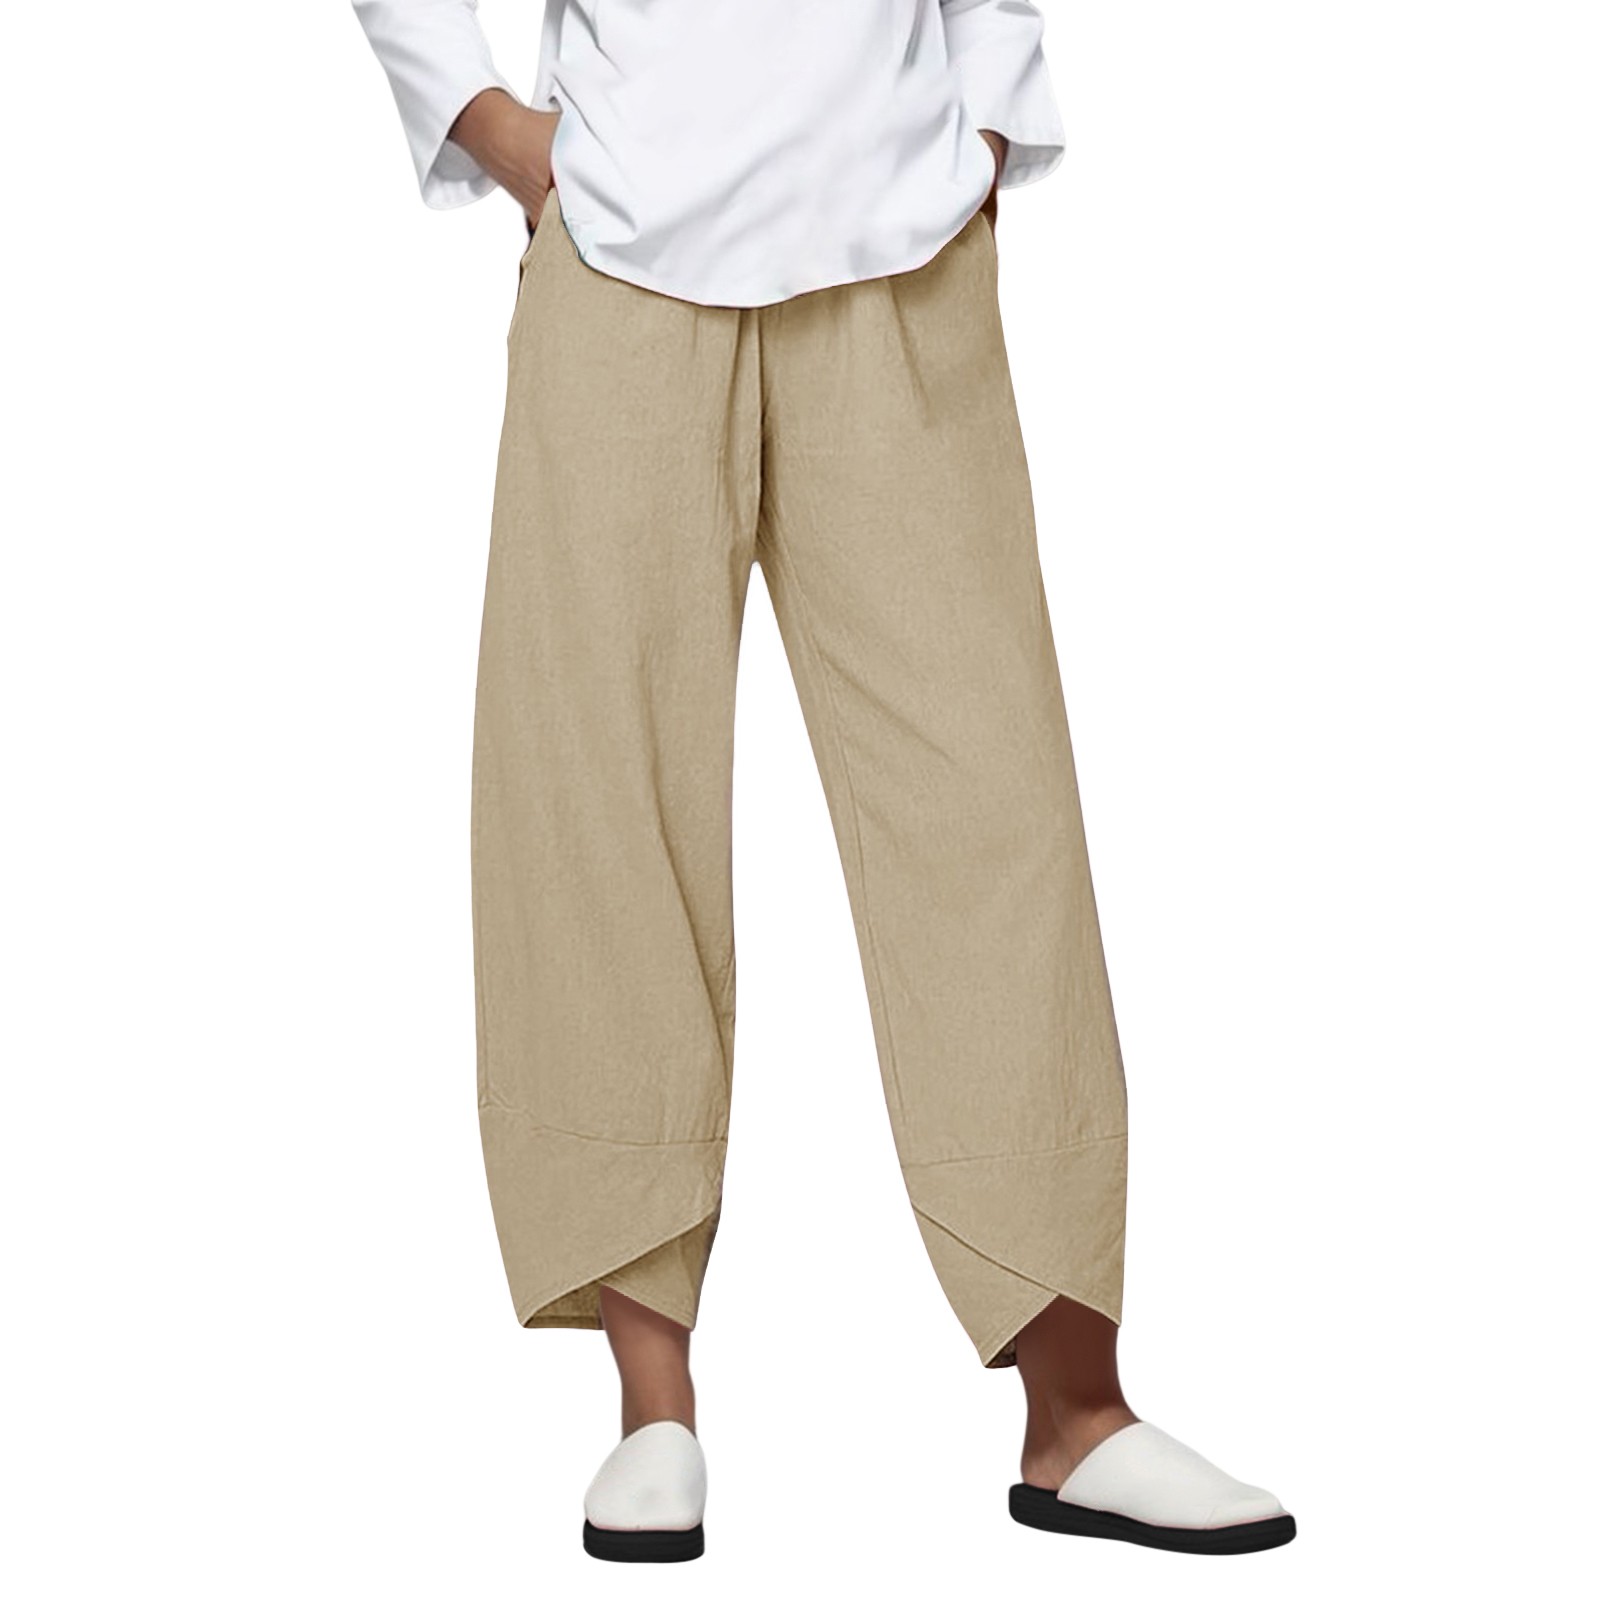 VOYOAO Womens Pants Summer Casual Slacks Lounge Pants Elastic Waist ...